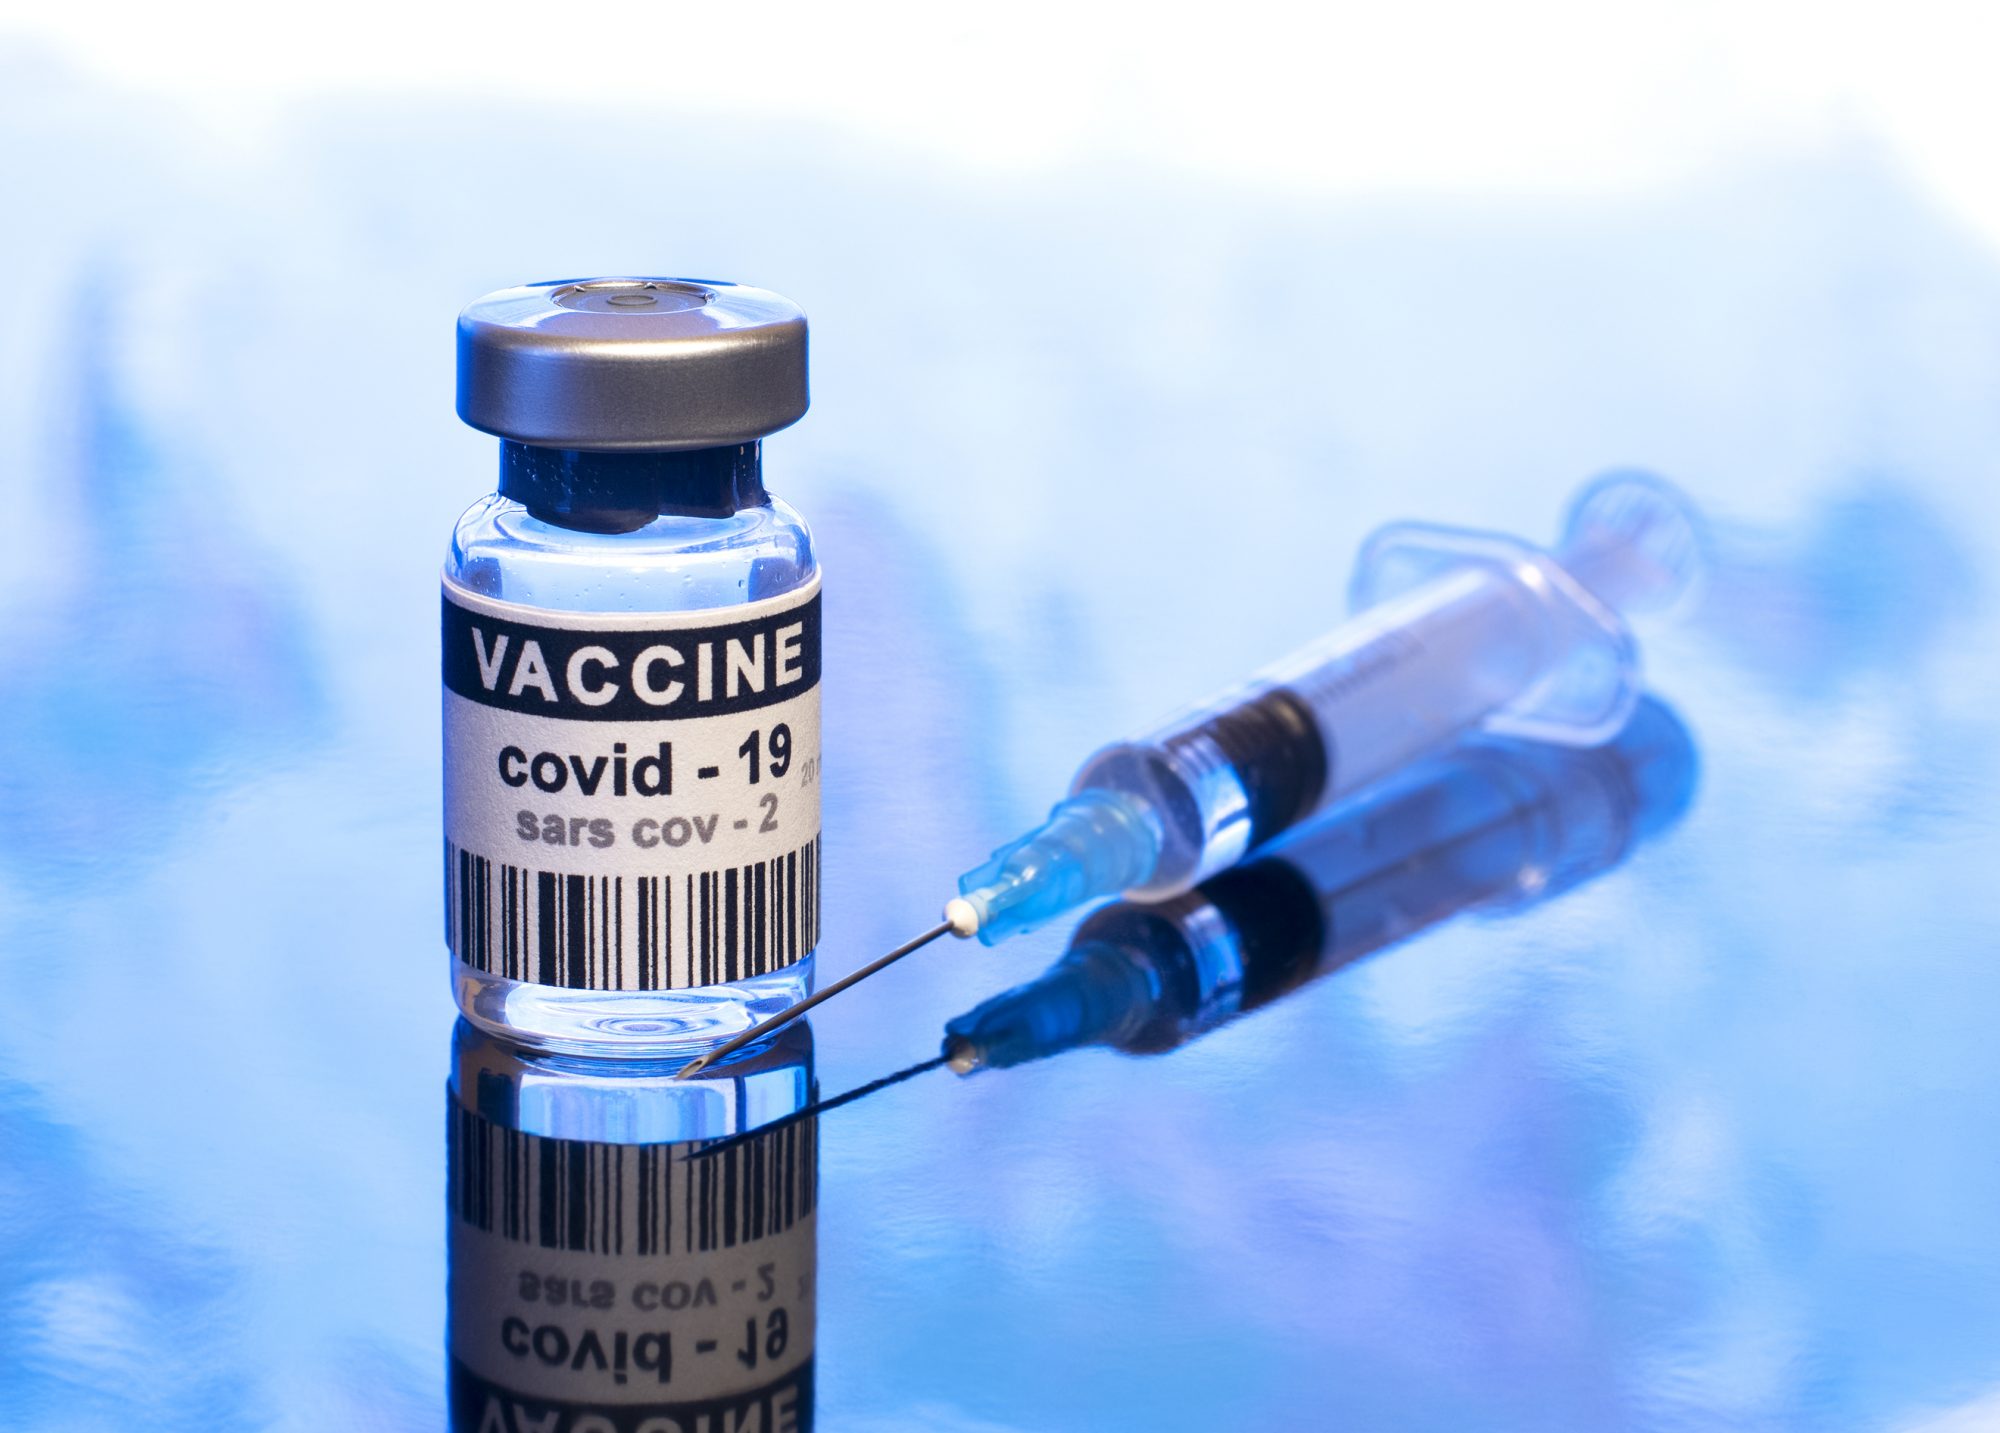 Valneva vaccine. SARS-cov-2 вакцина. Вакцина Хипра. Valneva vaccine logo. Virus vaccine